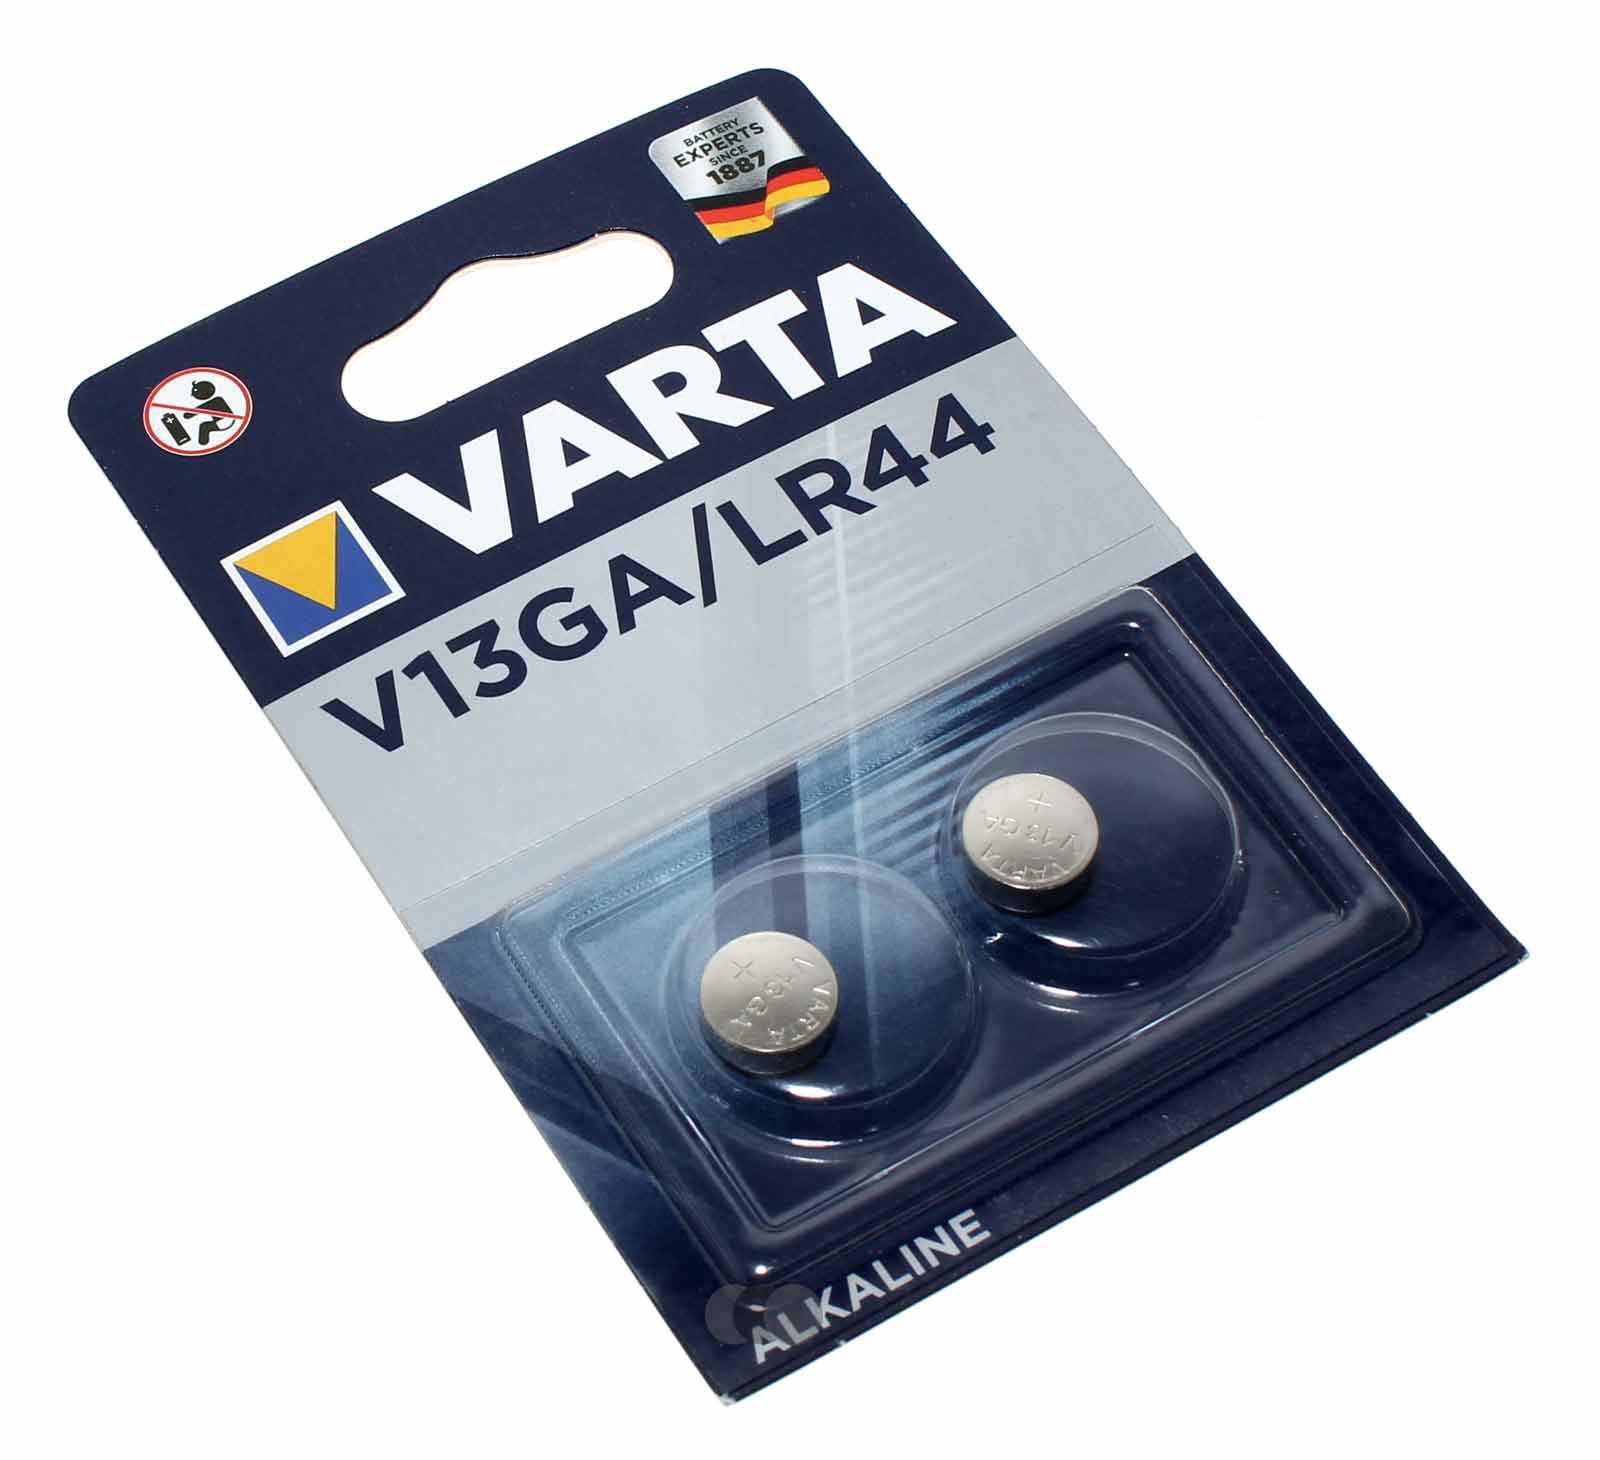 2er Pack Varta V13GA / LR44 Alkaline Knopfzelle Batterie, AG13, 1166A, 208-904, KA76, 1,5V, 138mAh